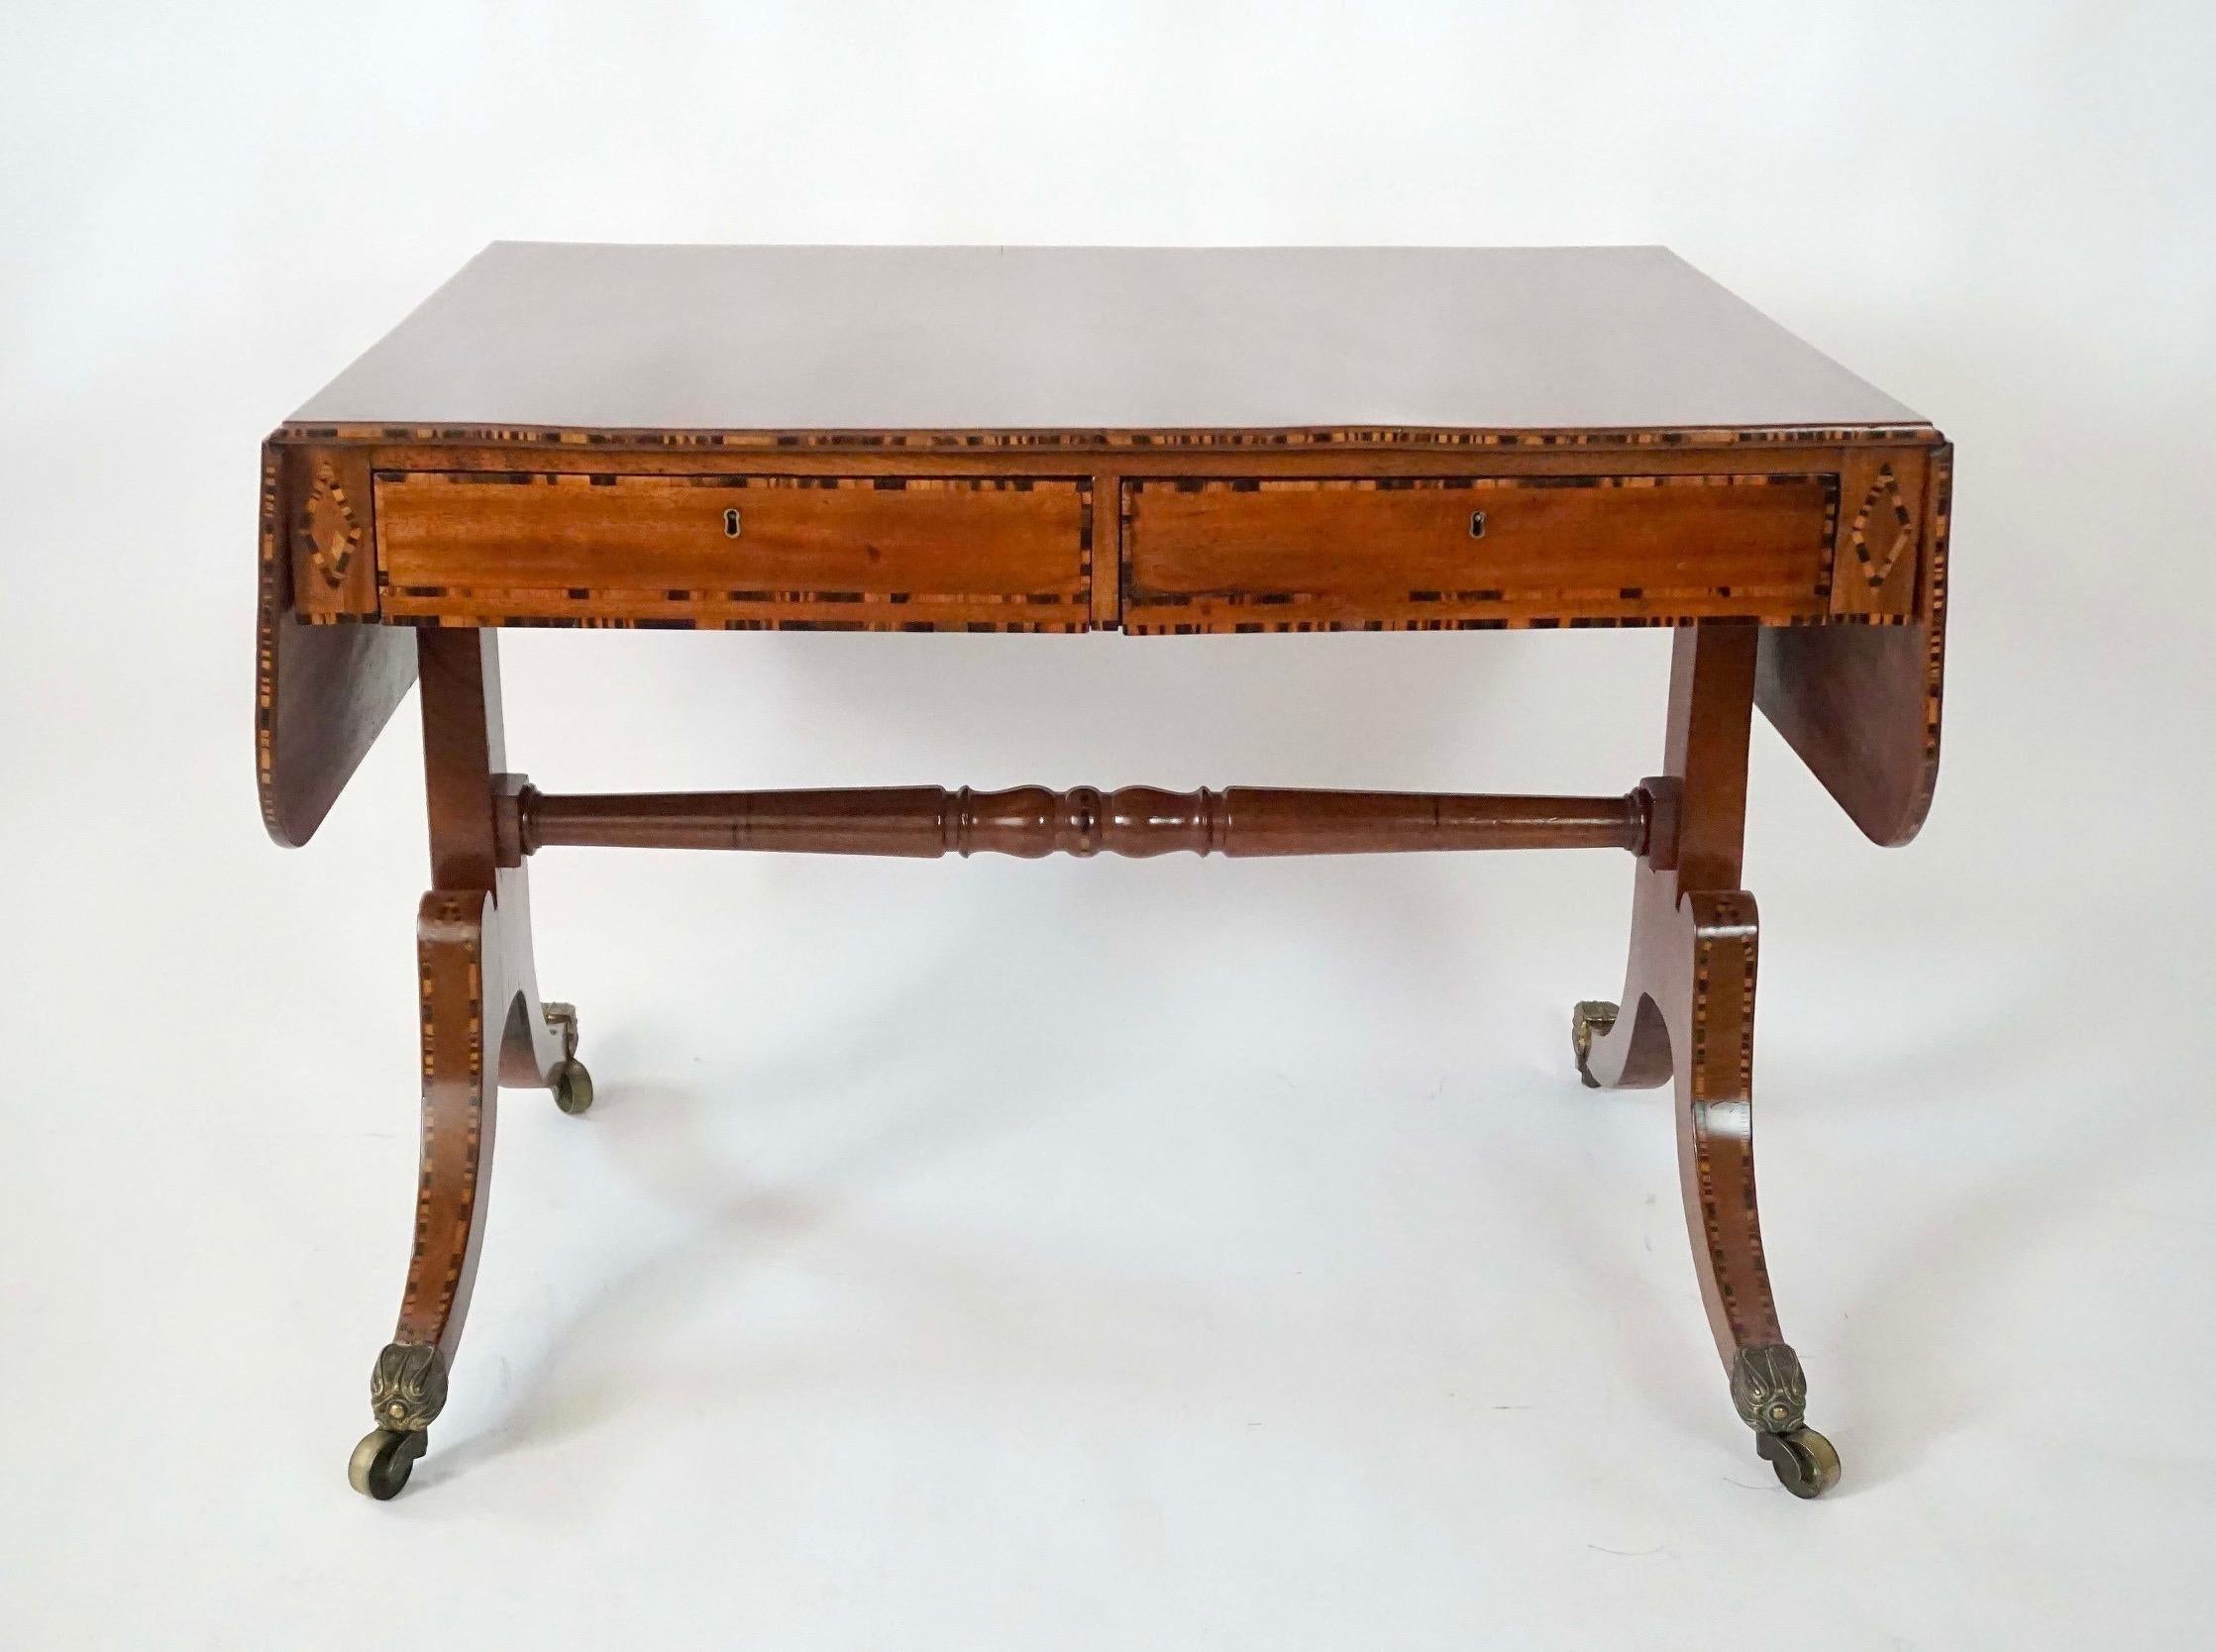 Très belle et élégante table de canapé à deux tiroirs en acajou massif de style régence anglaise vers 1820, réalisée par le célèbre ébéniste londonien William Wilkinson. Elle présente une forme à double face, avec une incrustation de calamandre